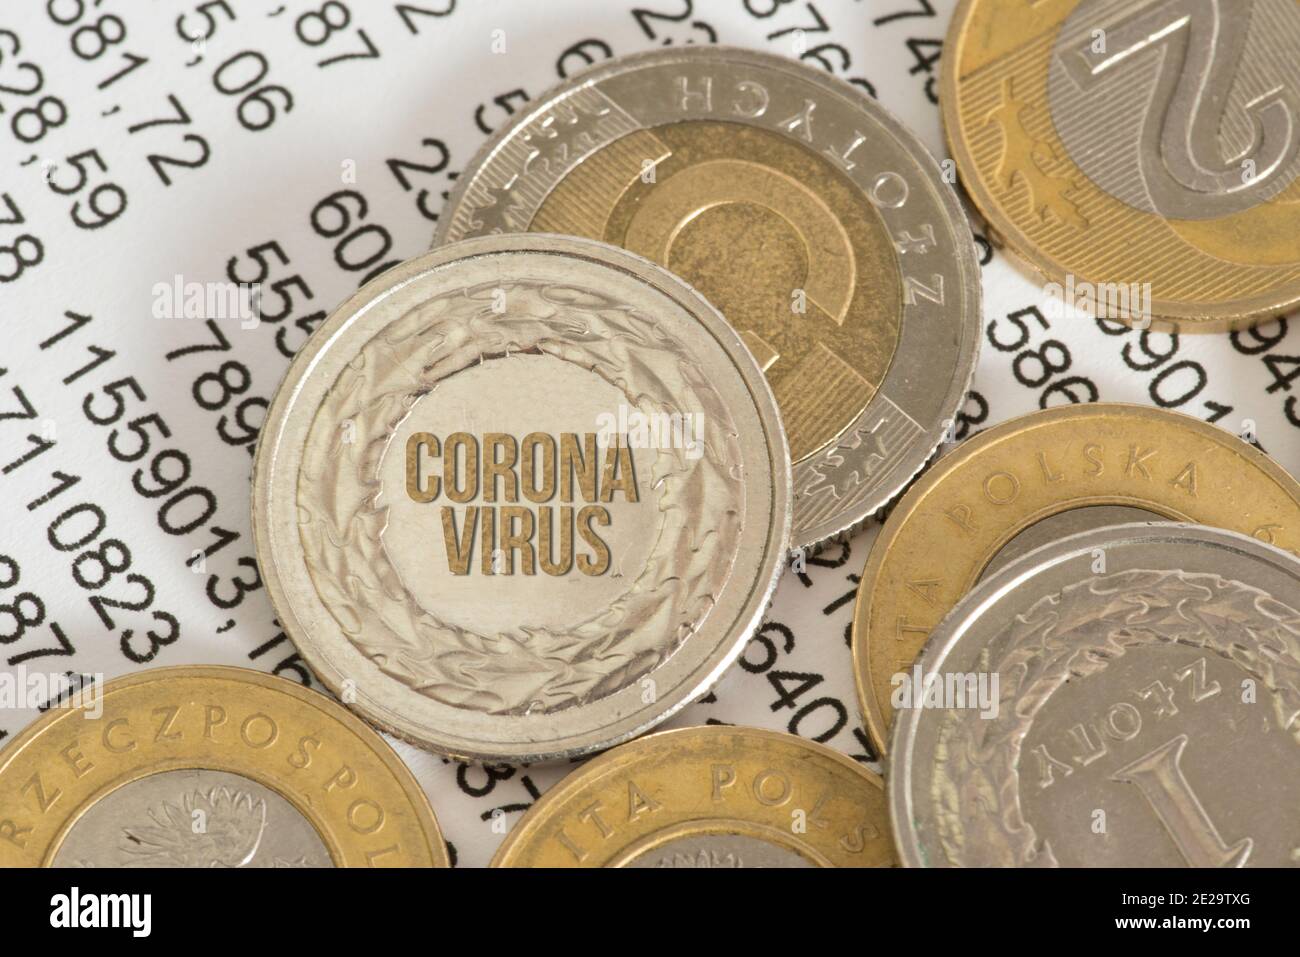 Money Polish Zloty and Coronavirus in Poland Stock Photo